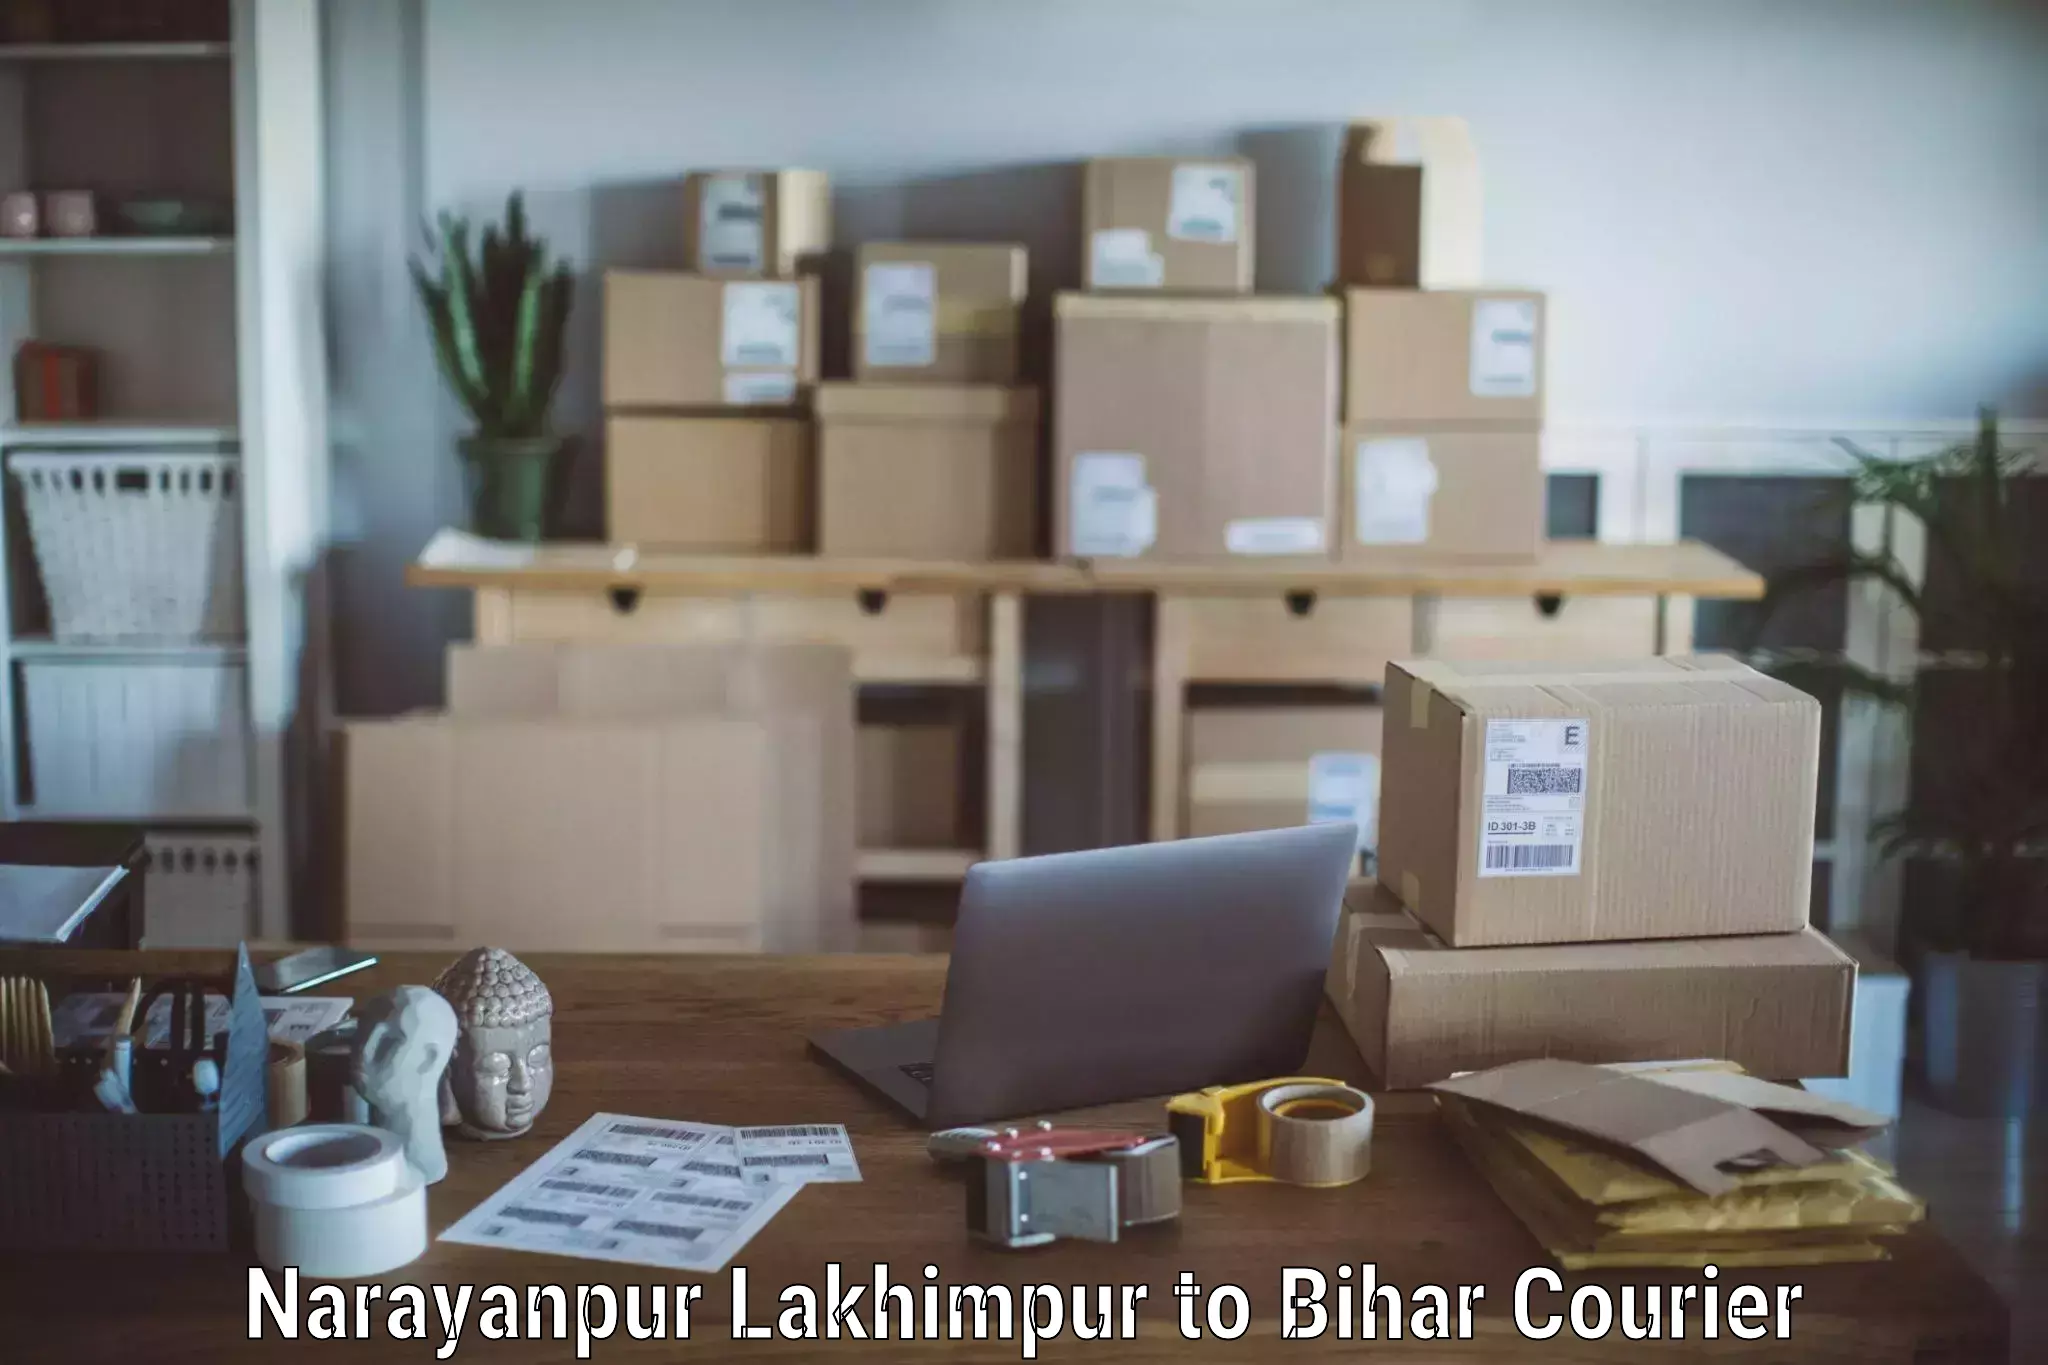 Moving and packing experts Narayanpur Lakhimpur to Katihar